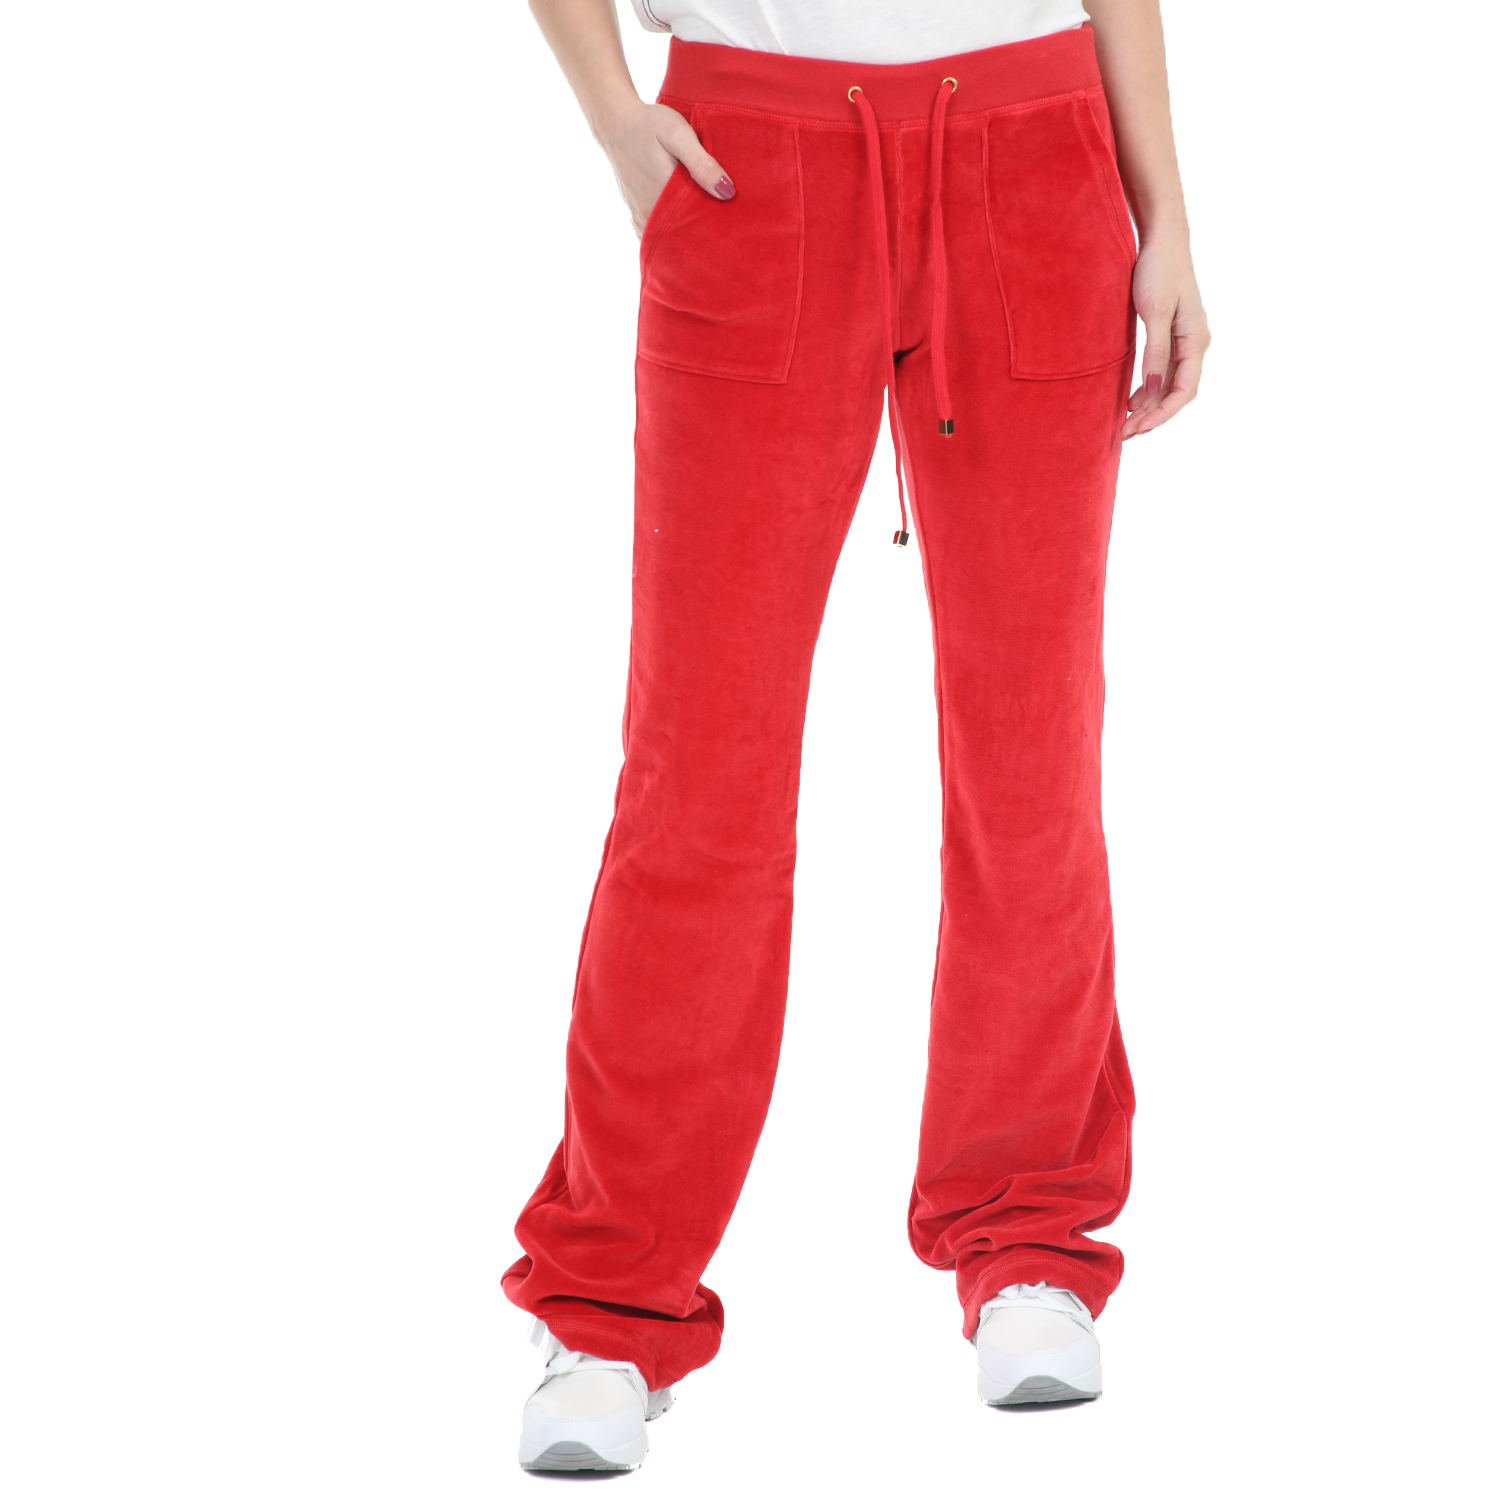 Γυναικεία/Ρούχα/Παντελόνια/Φόρμες FOUR ANGELS - Γυναικείο βελούδινο παντελόνι φόρμας CLASSIC κόκκινο